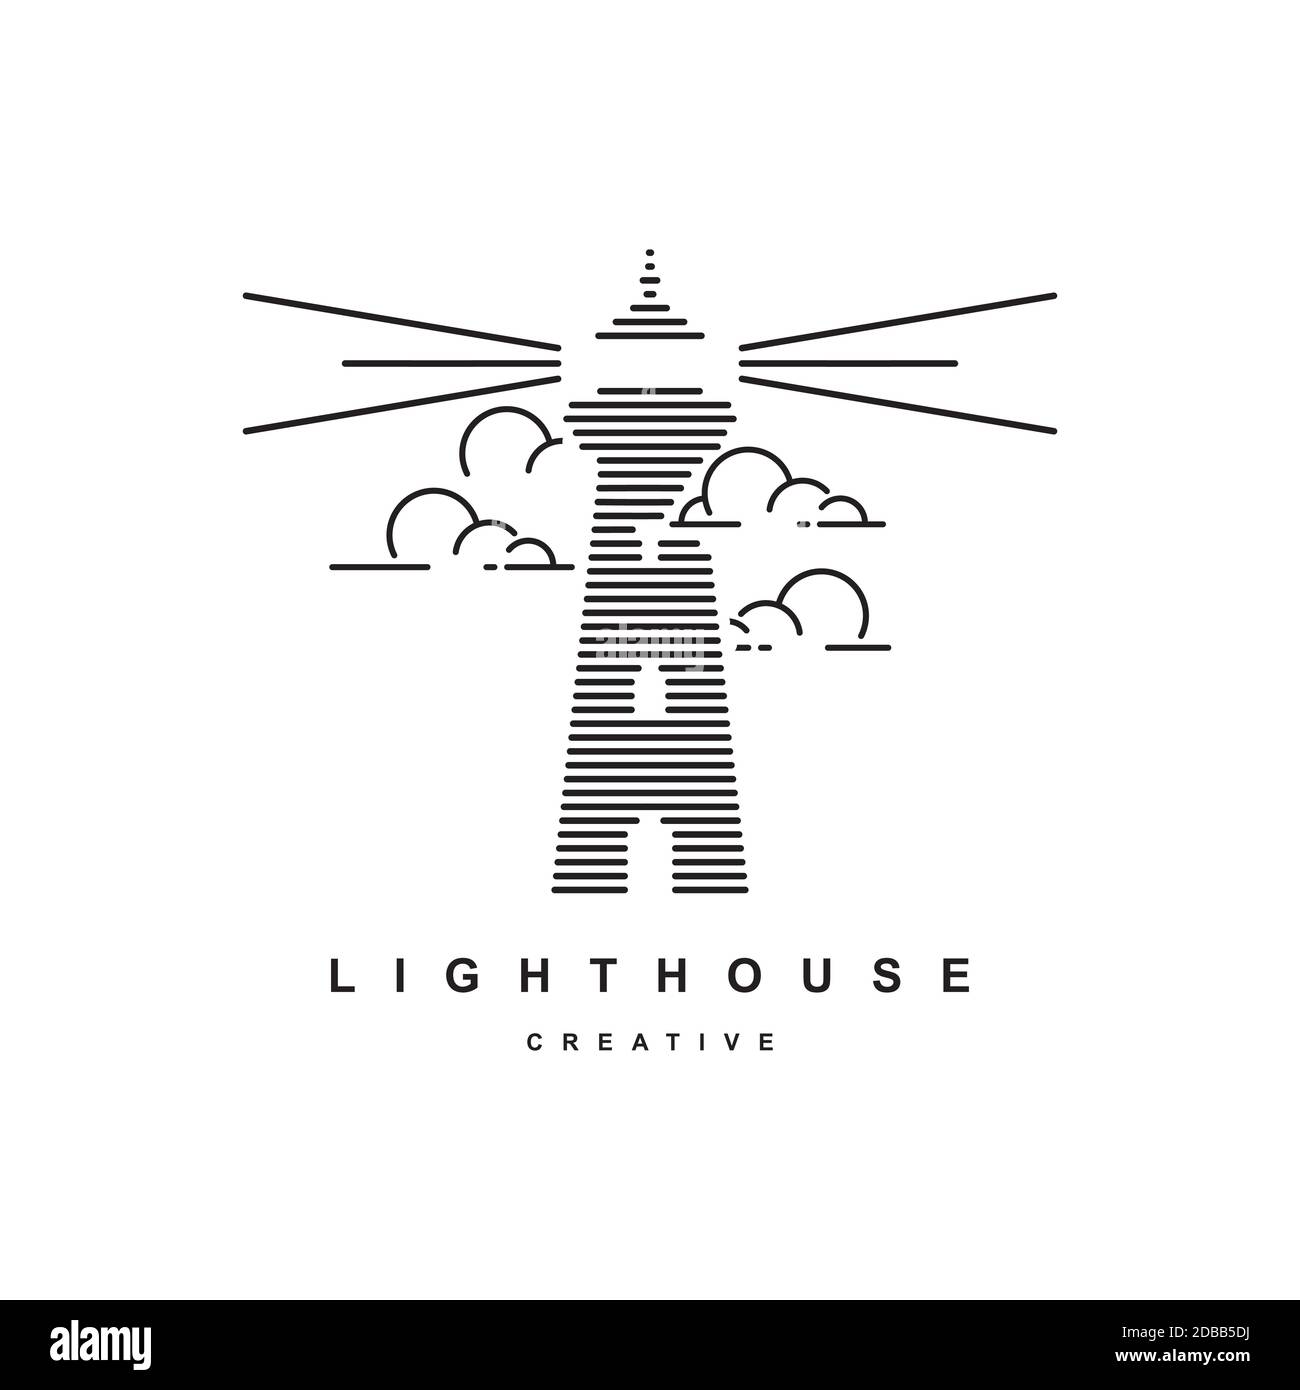 Lighthouse logo design vector template.Beacon symbol illustration Stock Vector